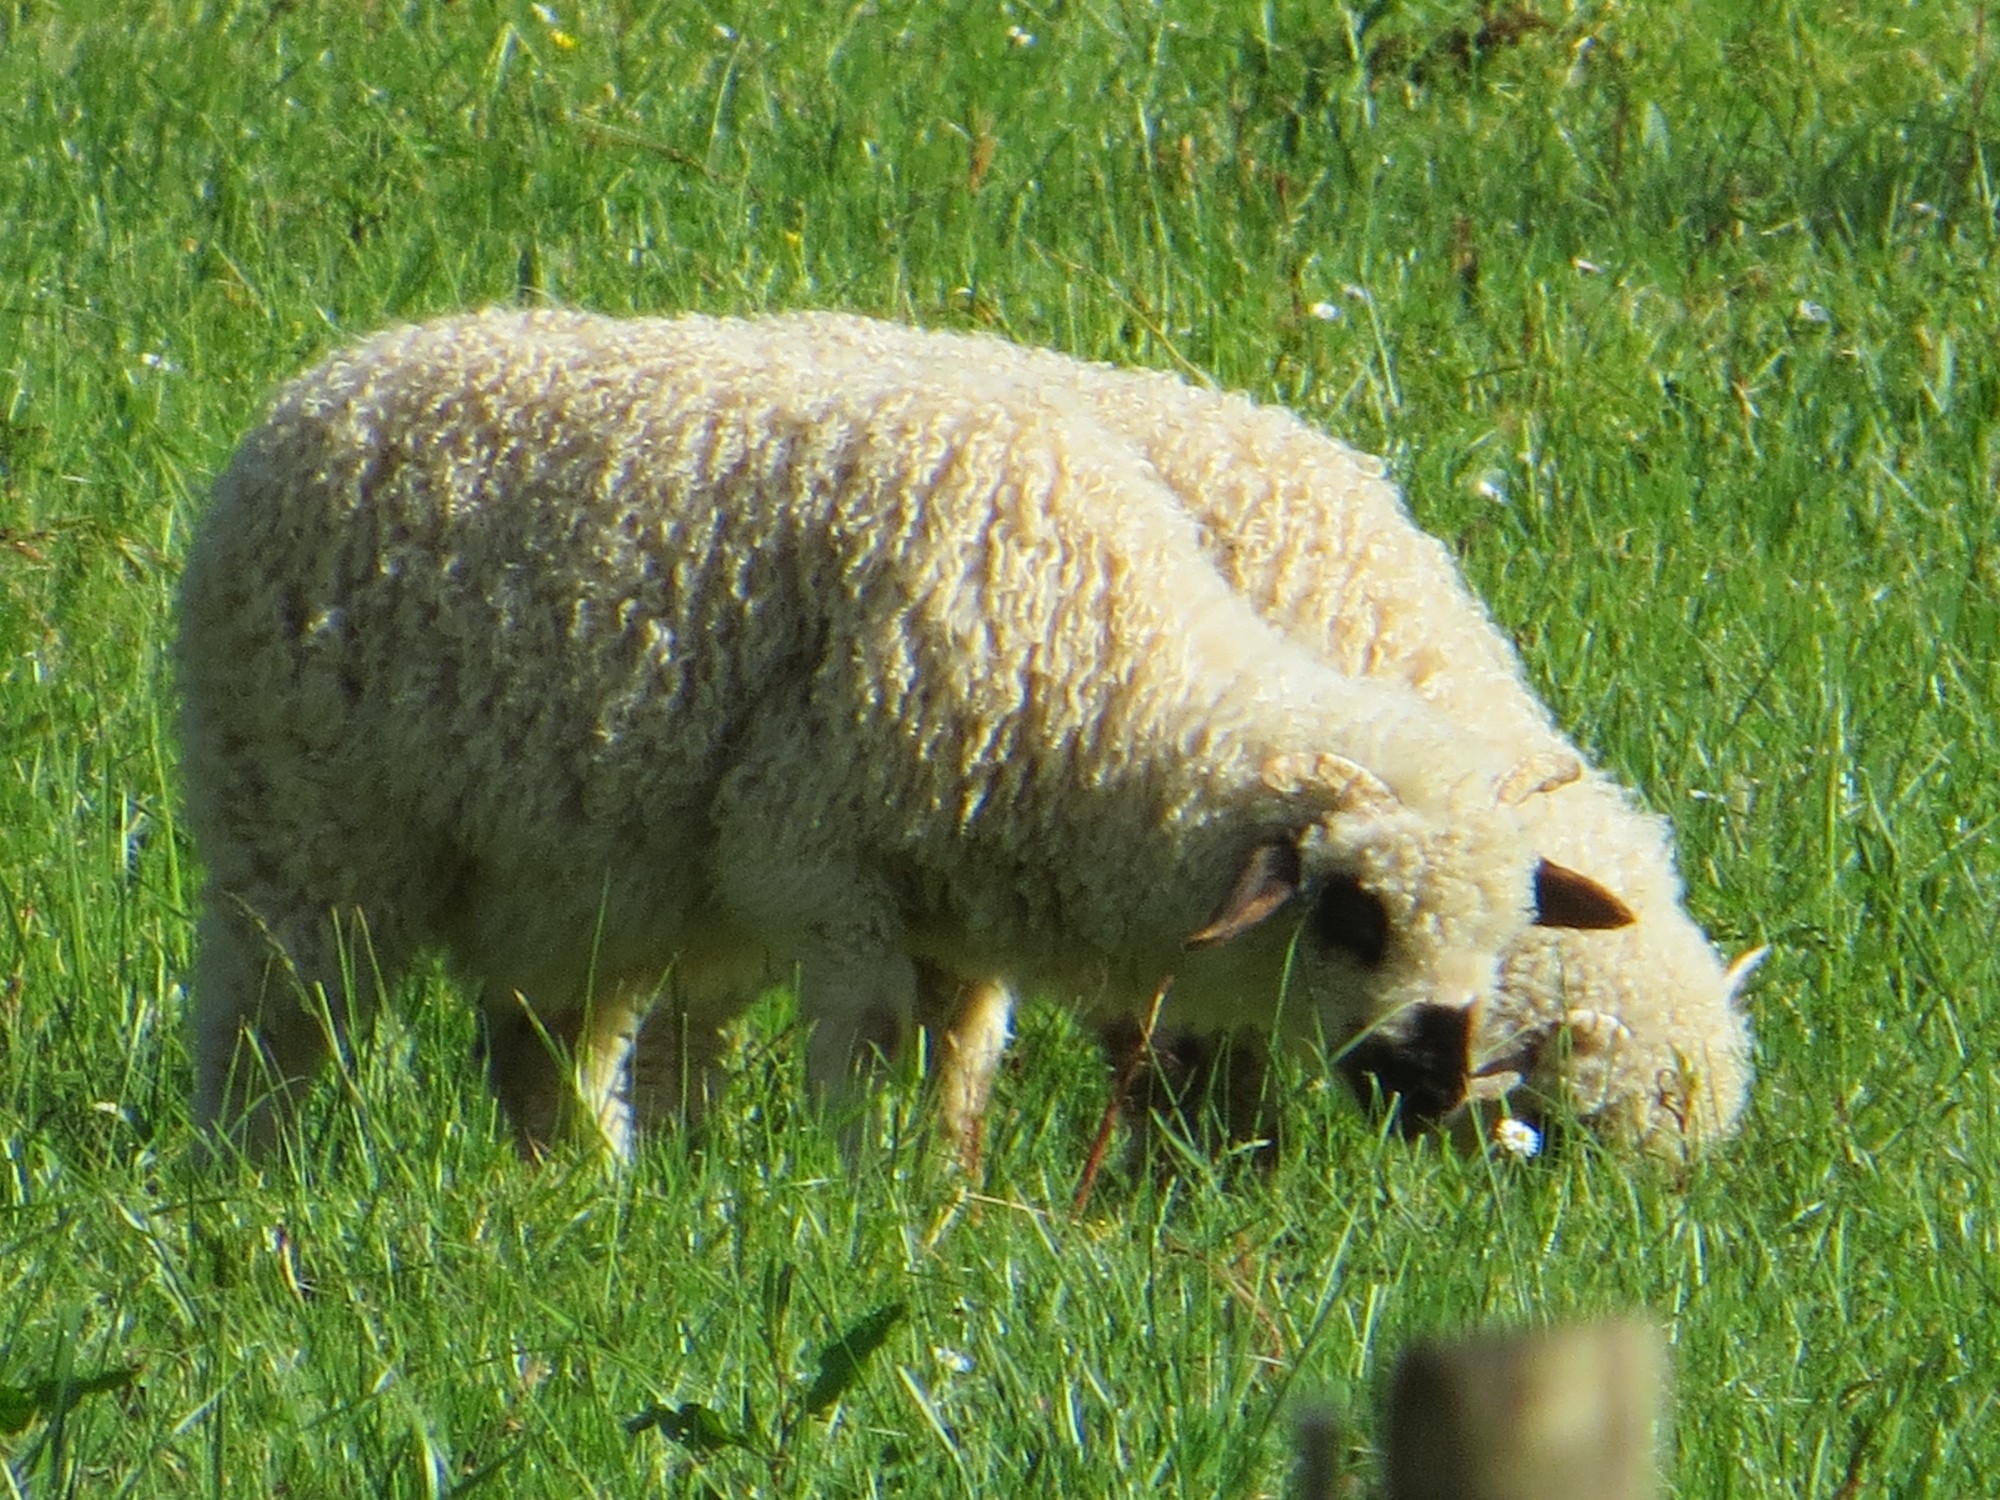 Les ovins, représentants de la faune domestique européenne, à la Ferme Exotique de Cadaujac